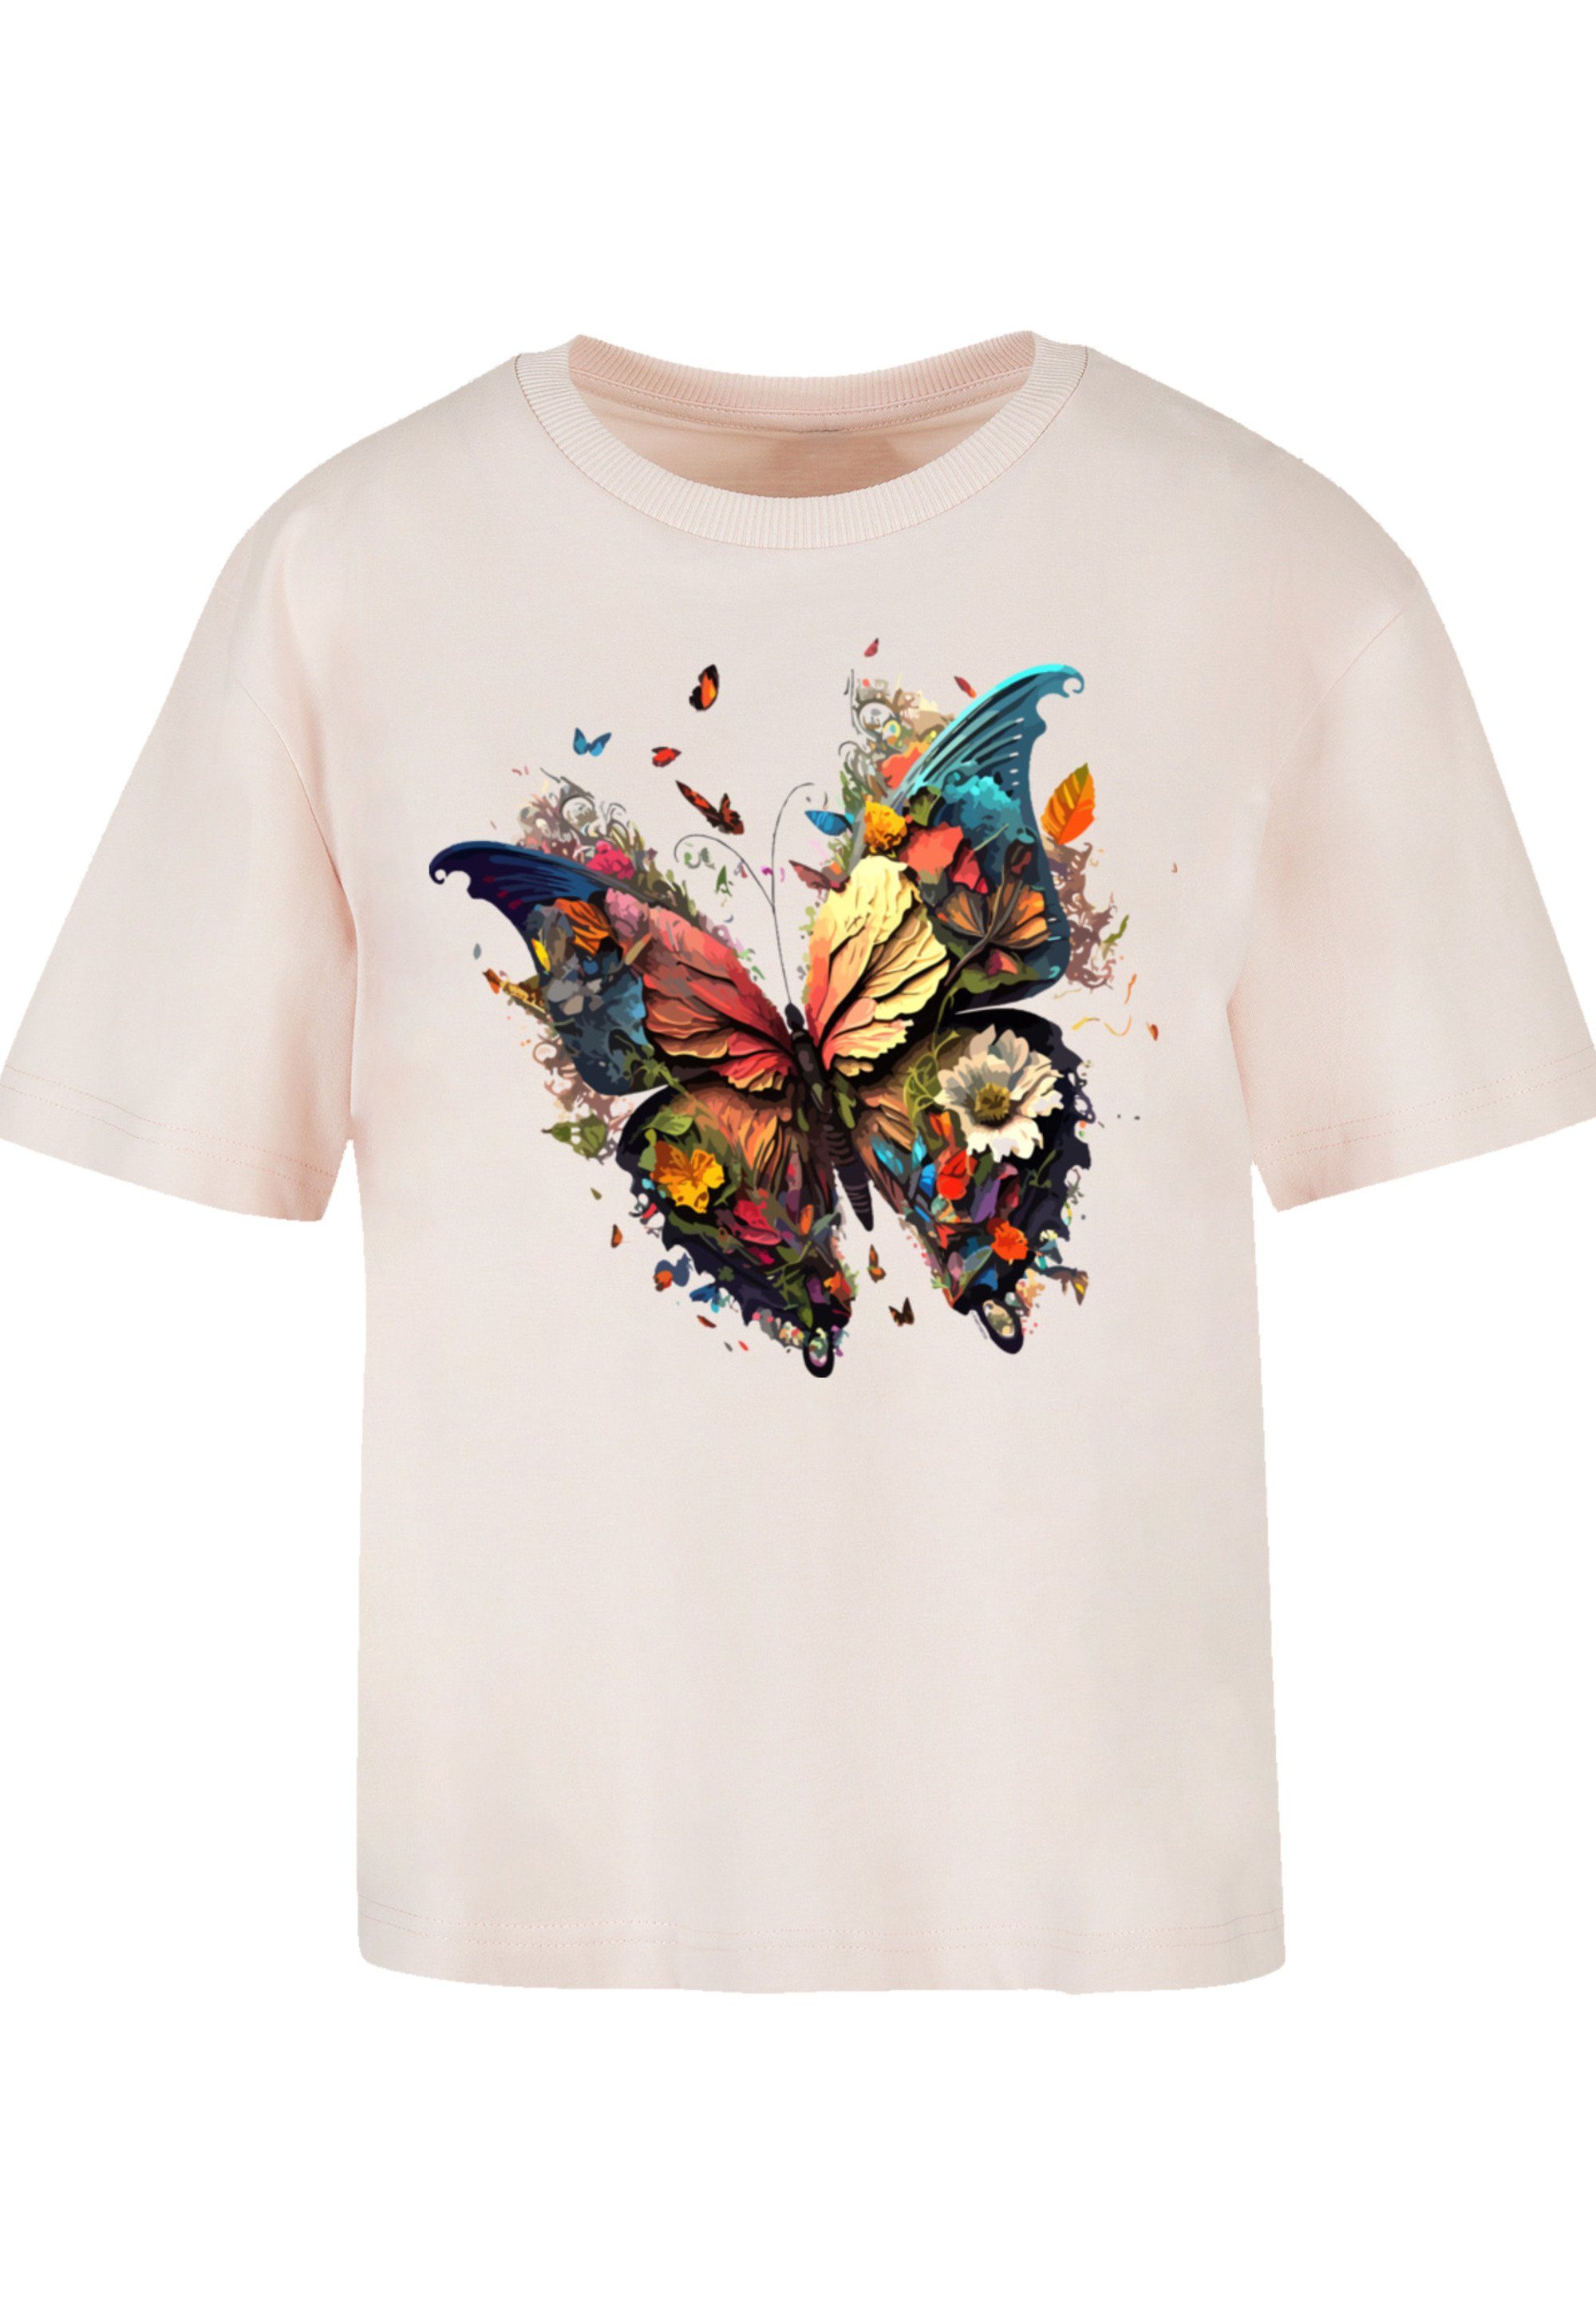 T-Shirt Gerippter Schmetterling Rundhalsausschnitt für Look F4NT4STIC Magic Print, stylischen